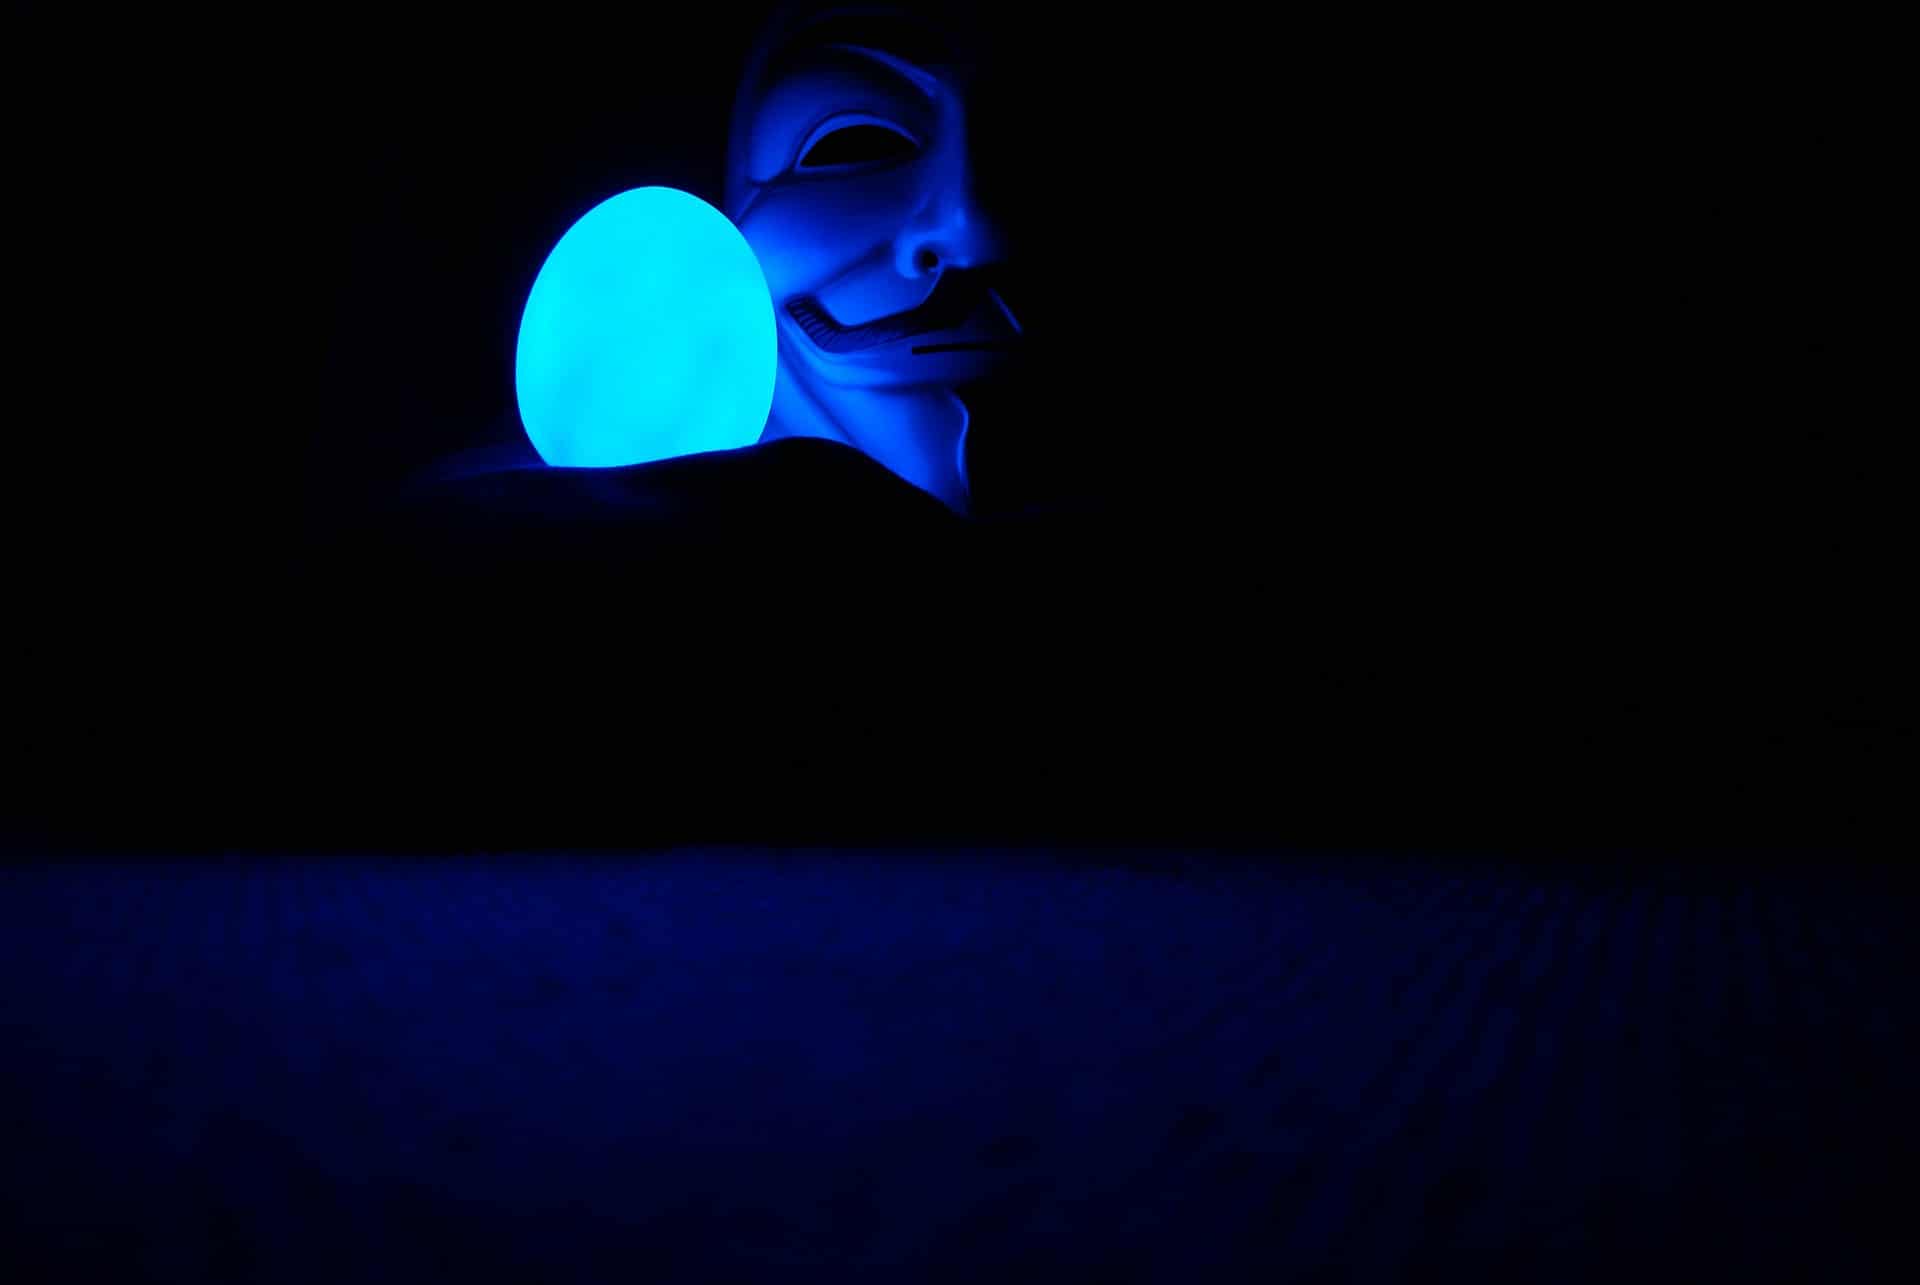 5 novembre, V per Vendetta e la maschera di Guy Fawkes